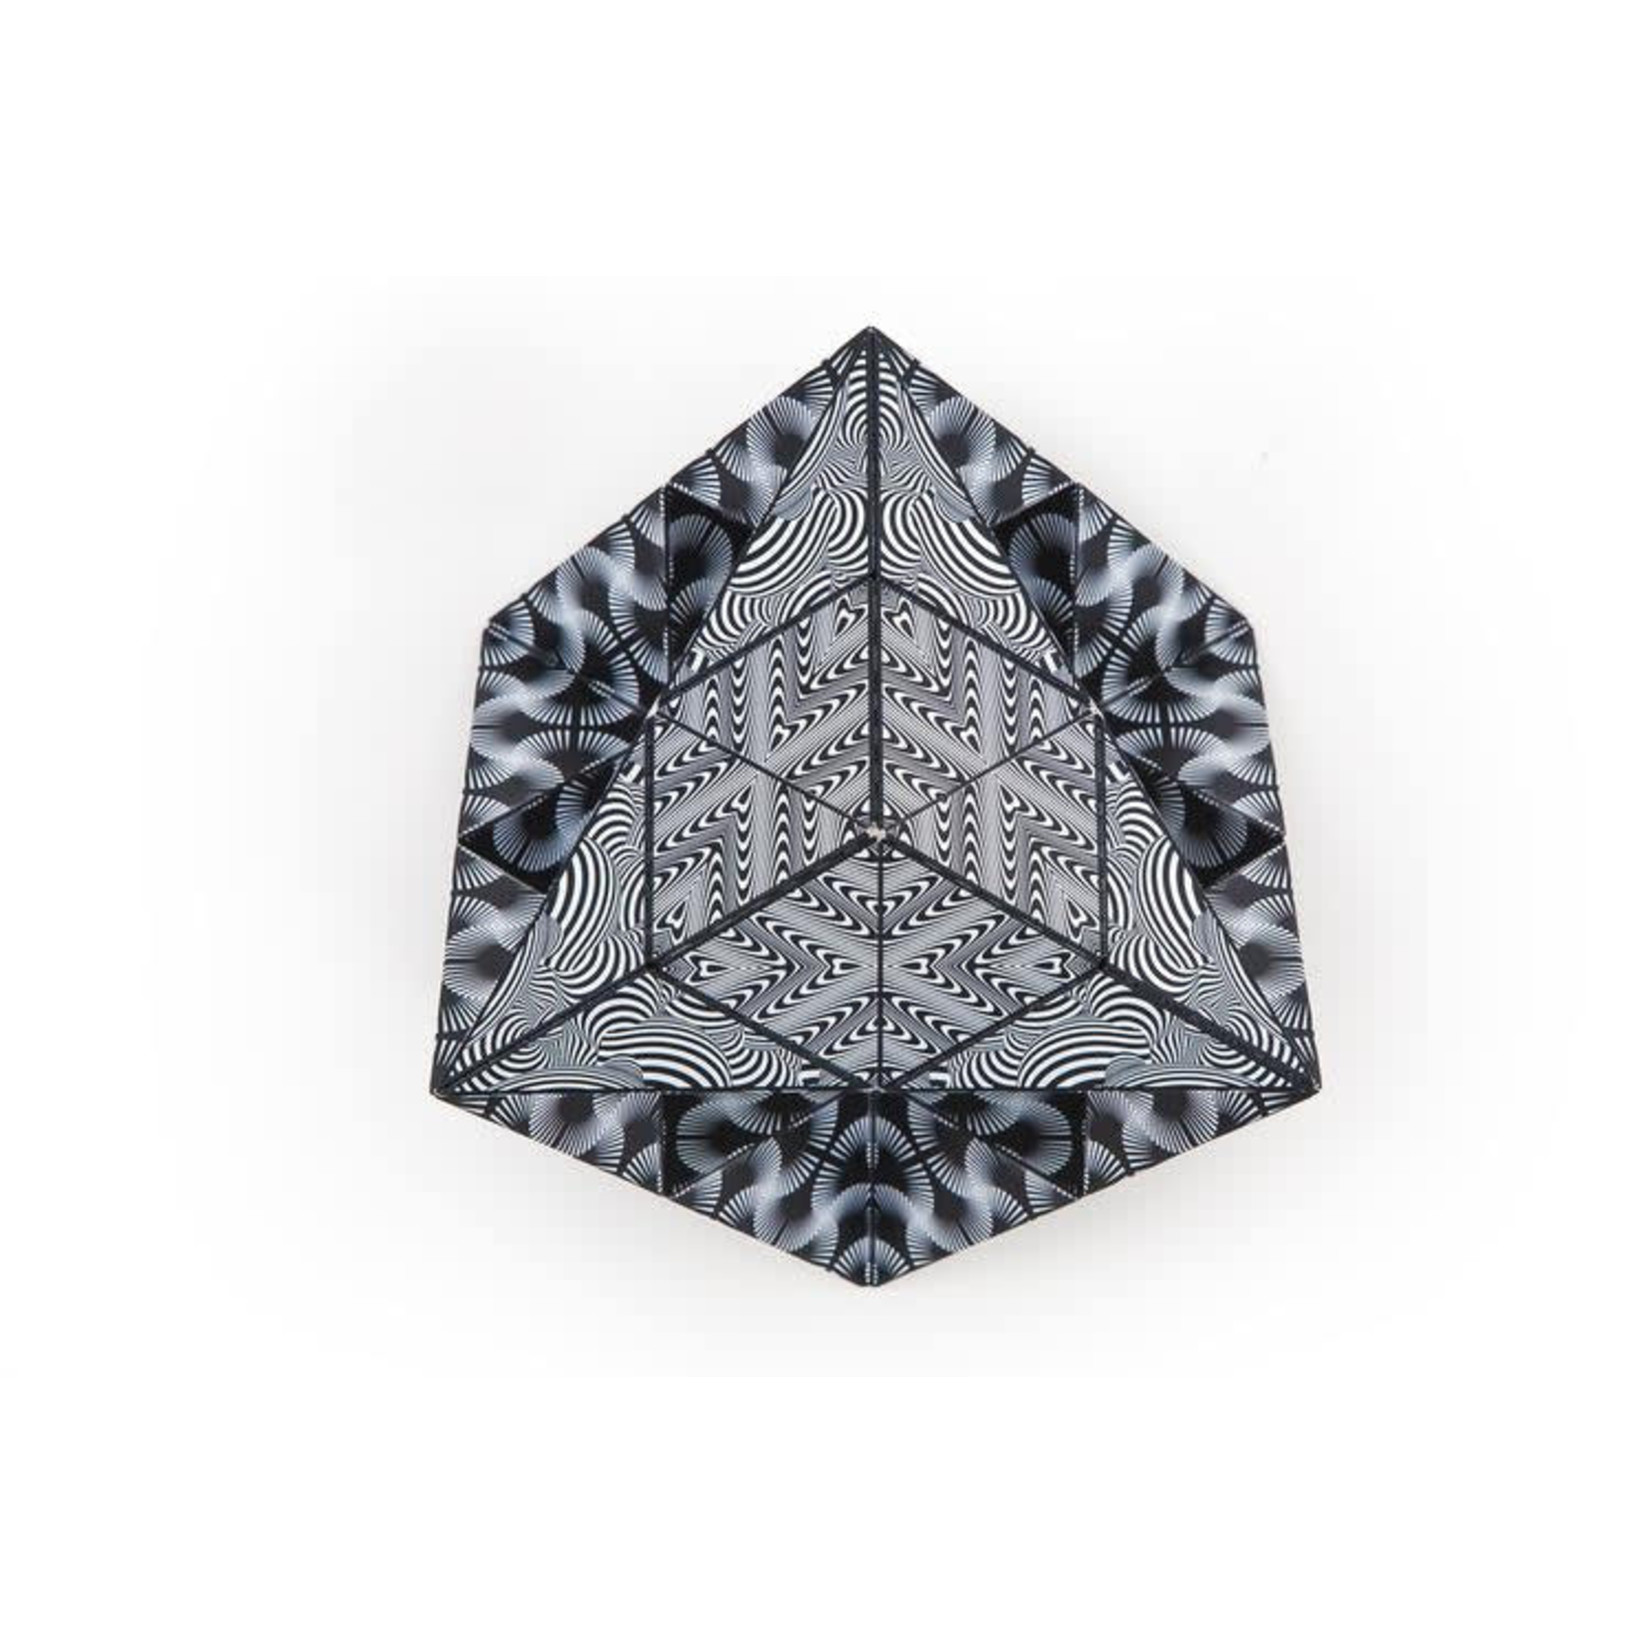 Shashibo Shape Shifting Box Puzzle - Black and White